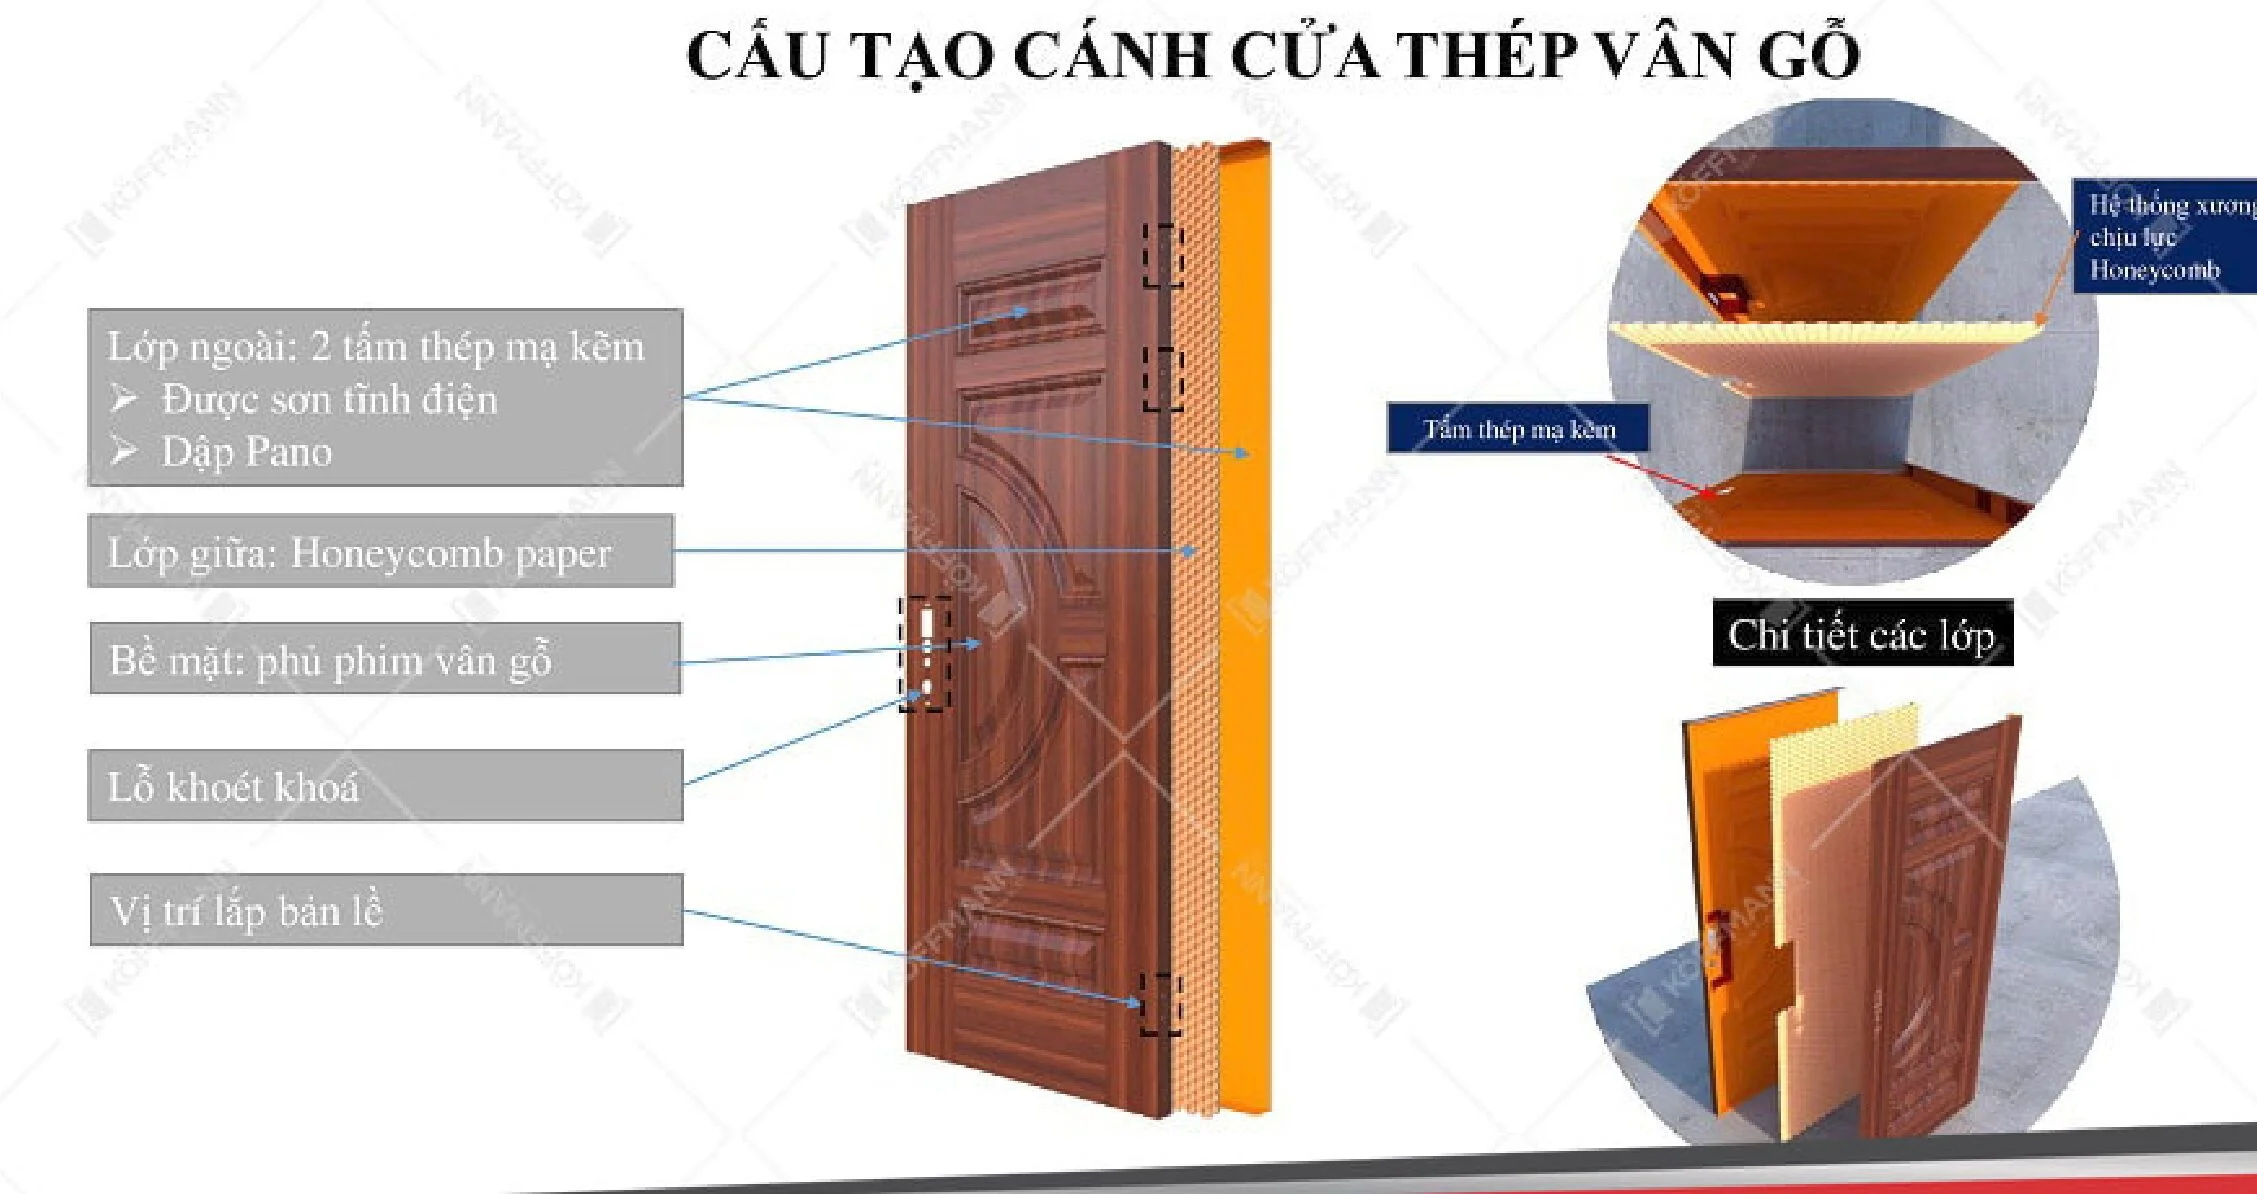 Nội, ngoại thất: Cửa thép vân gỗ tại Đà Lạt | Mẫu cửa chính giá rẻ Cau-tao-canh-cua-thep-van-go